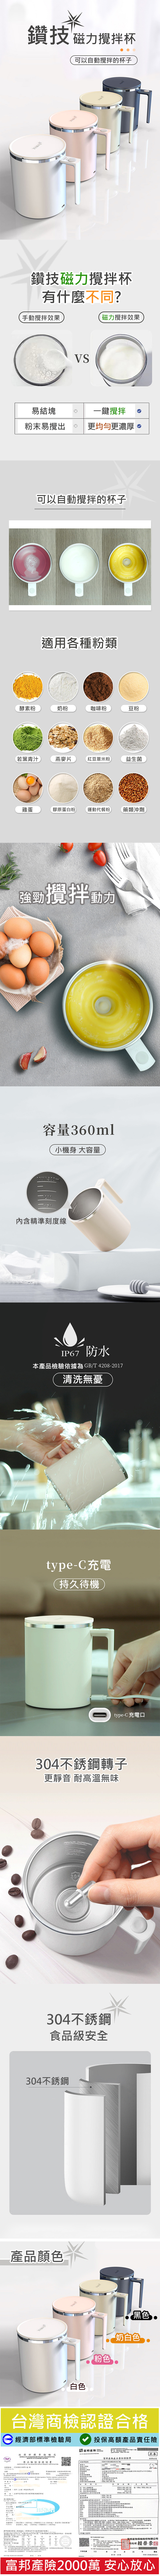 二代S基礎款-鑽技全自動磁力咖啡蛋白粉攪拌杯(360ml) 台灣商檢合格 